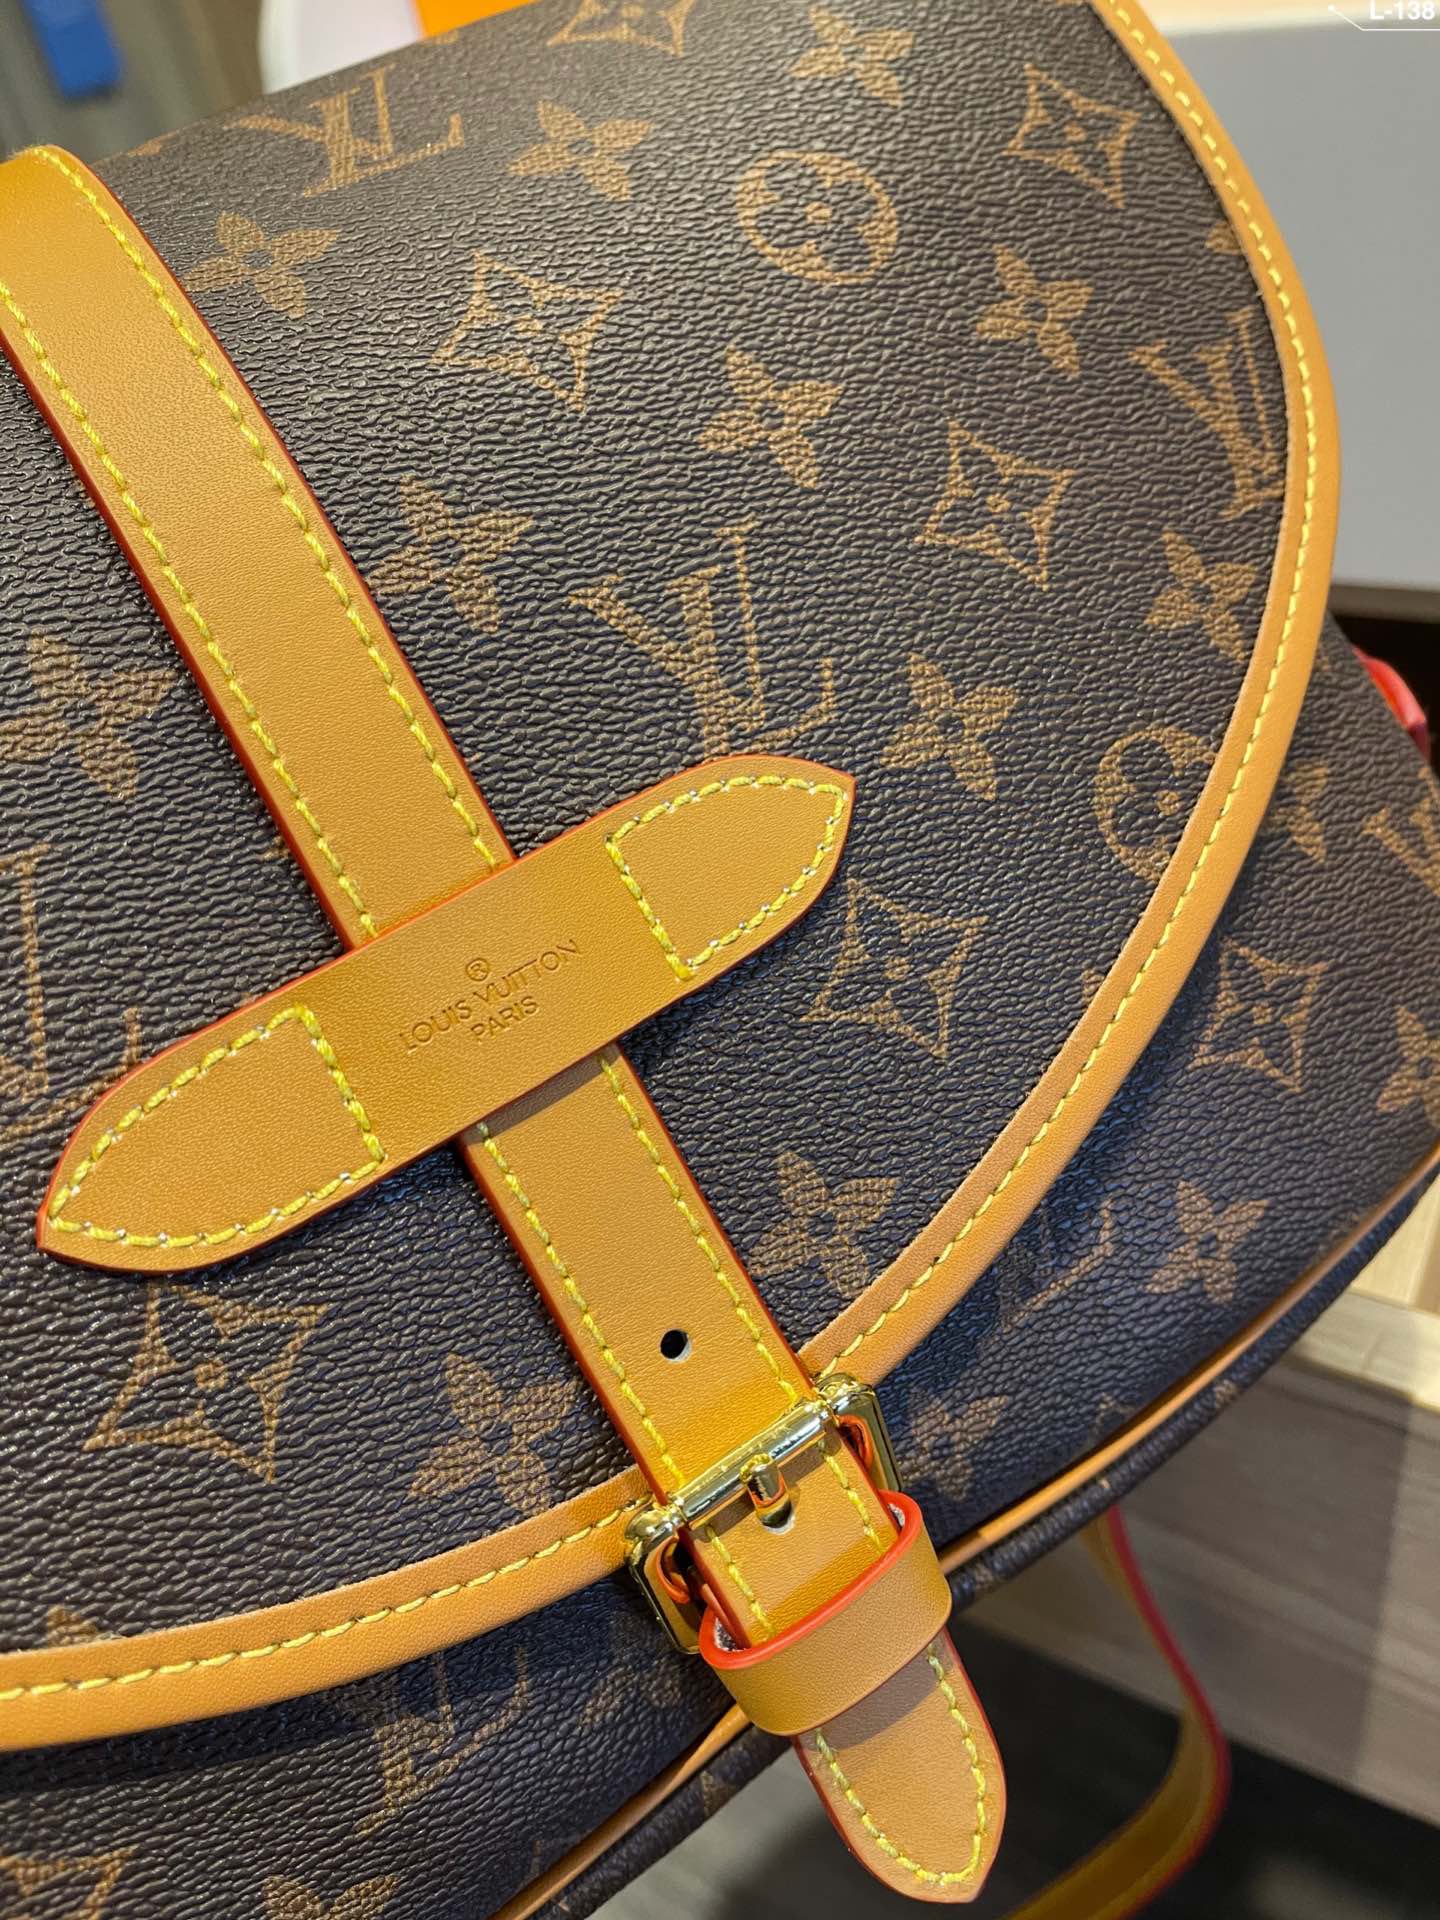 Designer Handbags LN 514